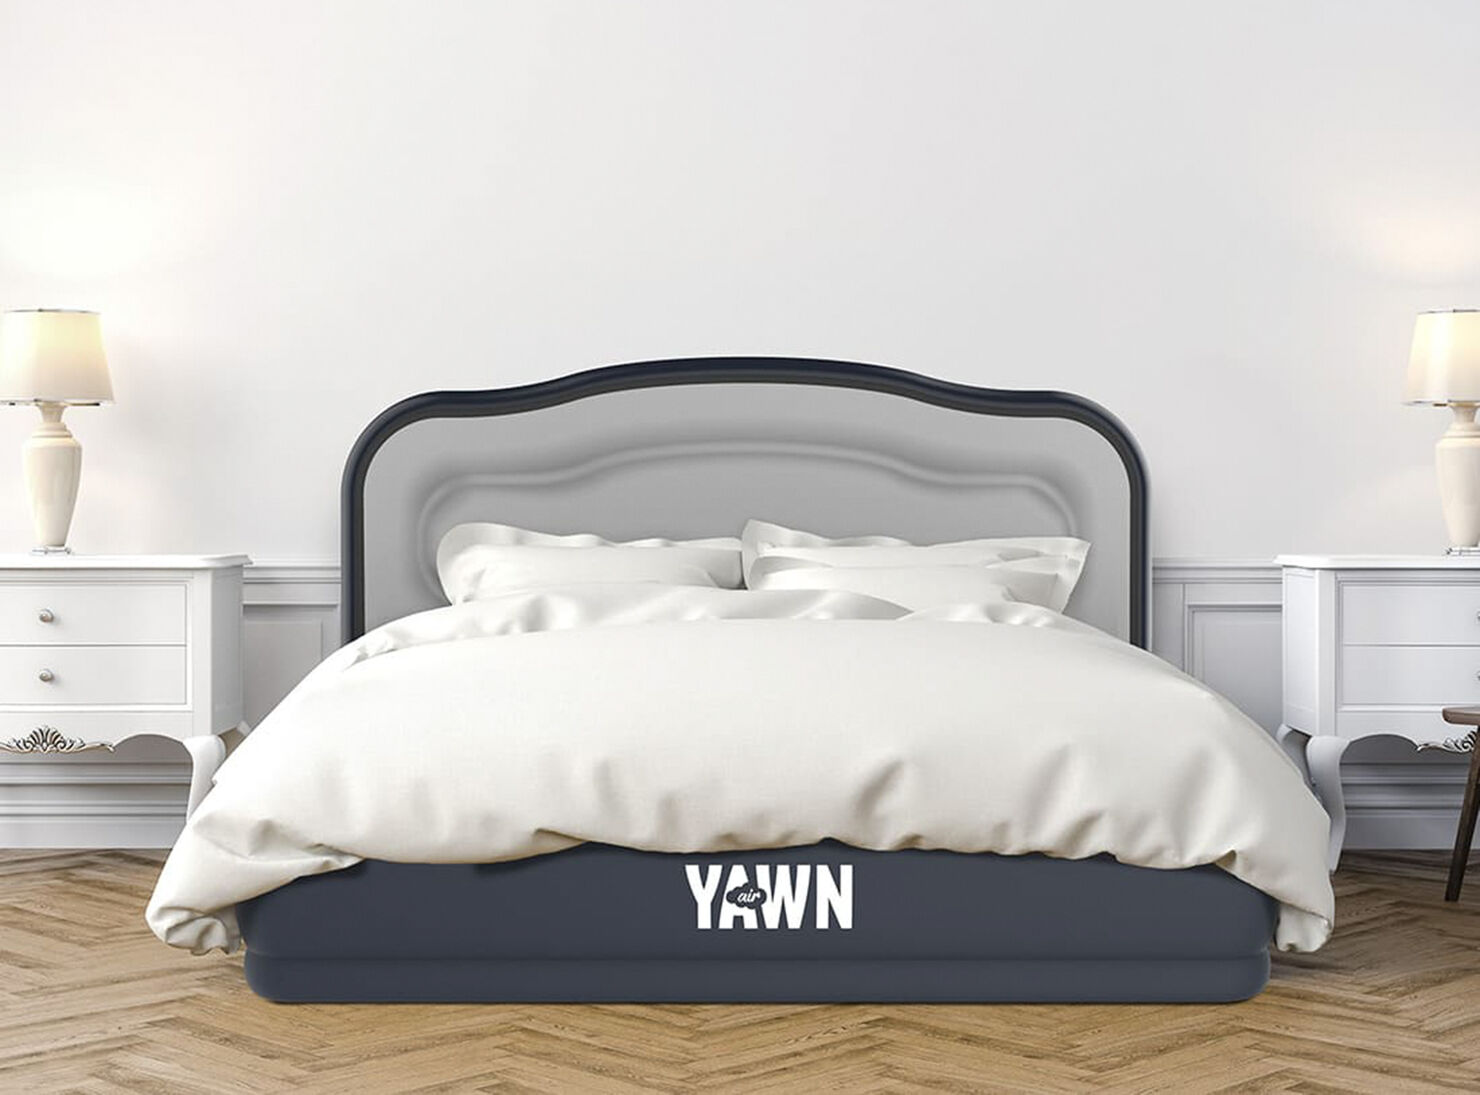 Colchón Yawn Air Bed Inflable Tamaño Yawn Air - Sacos de Dormir y Colchones Paris.cl